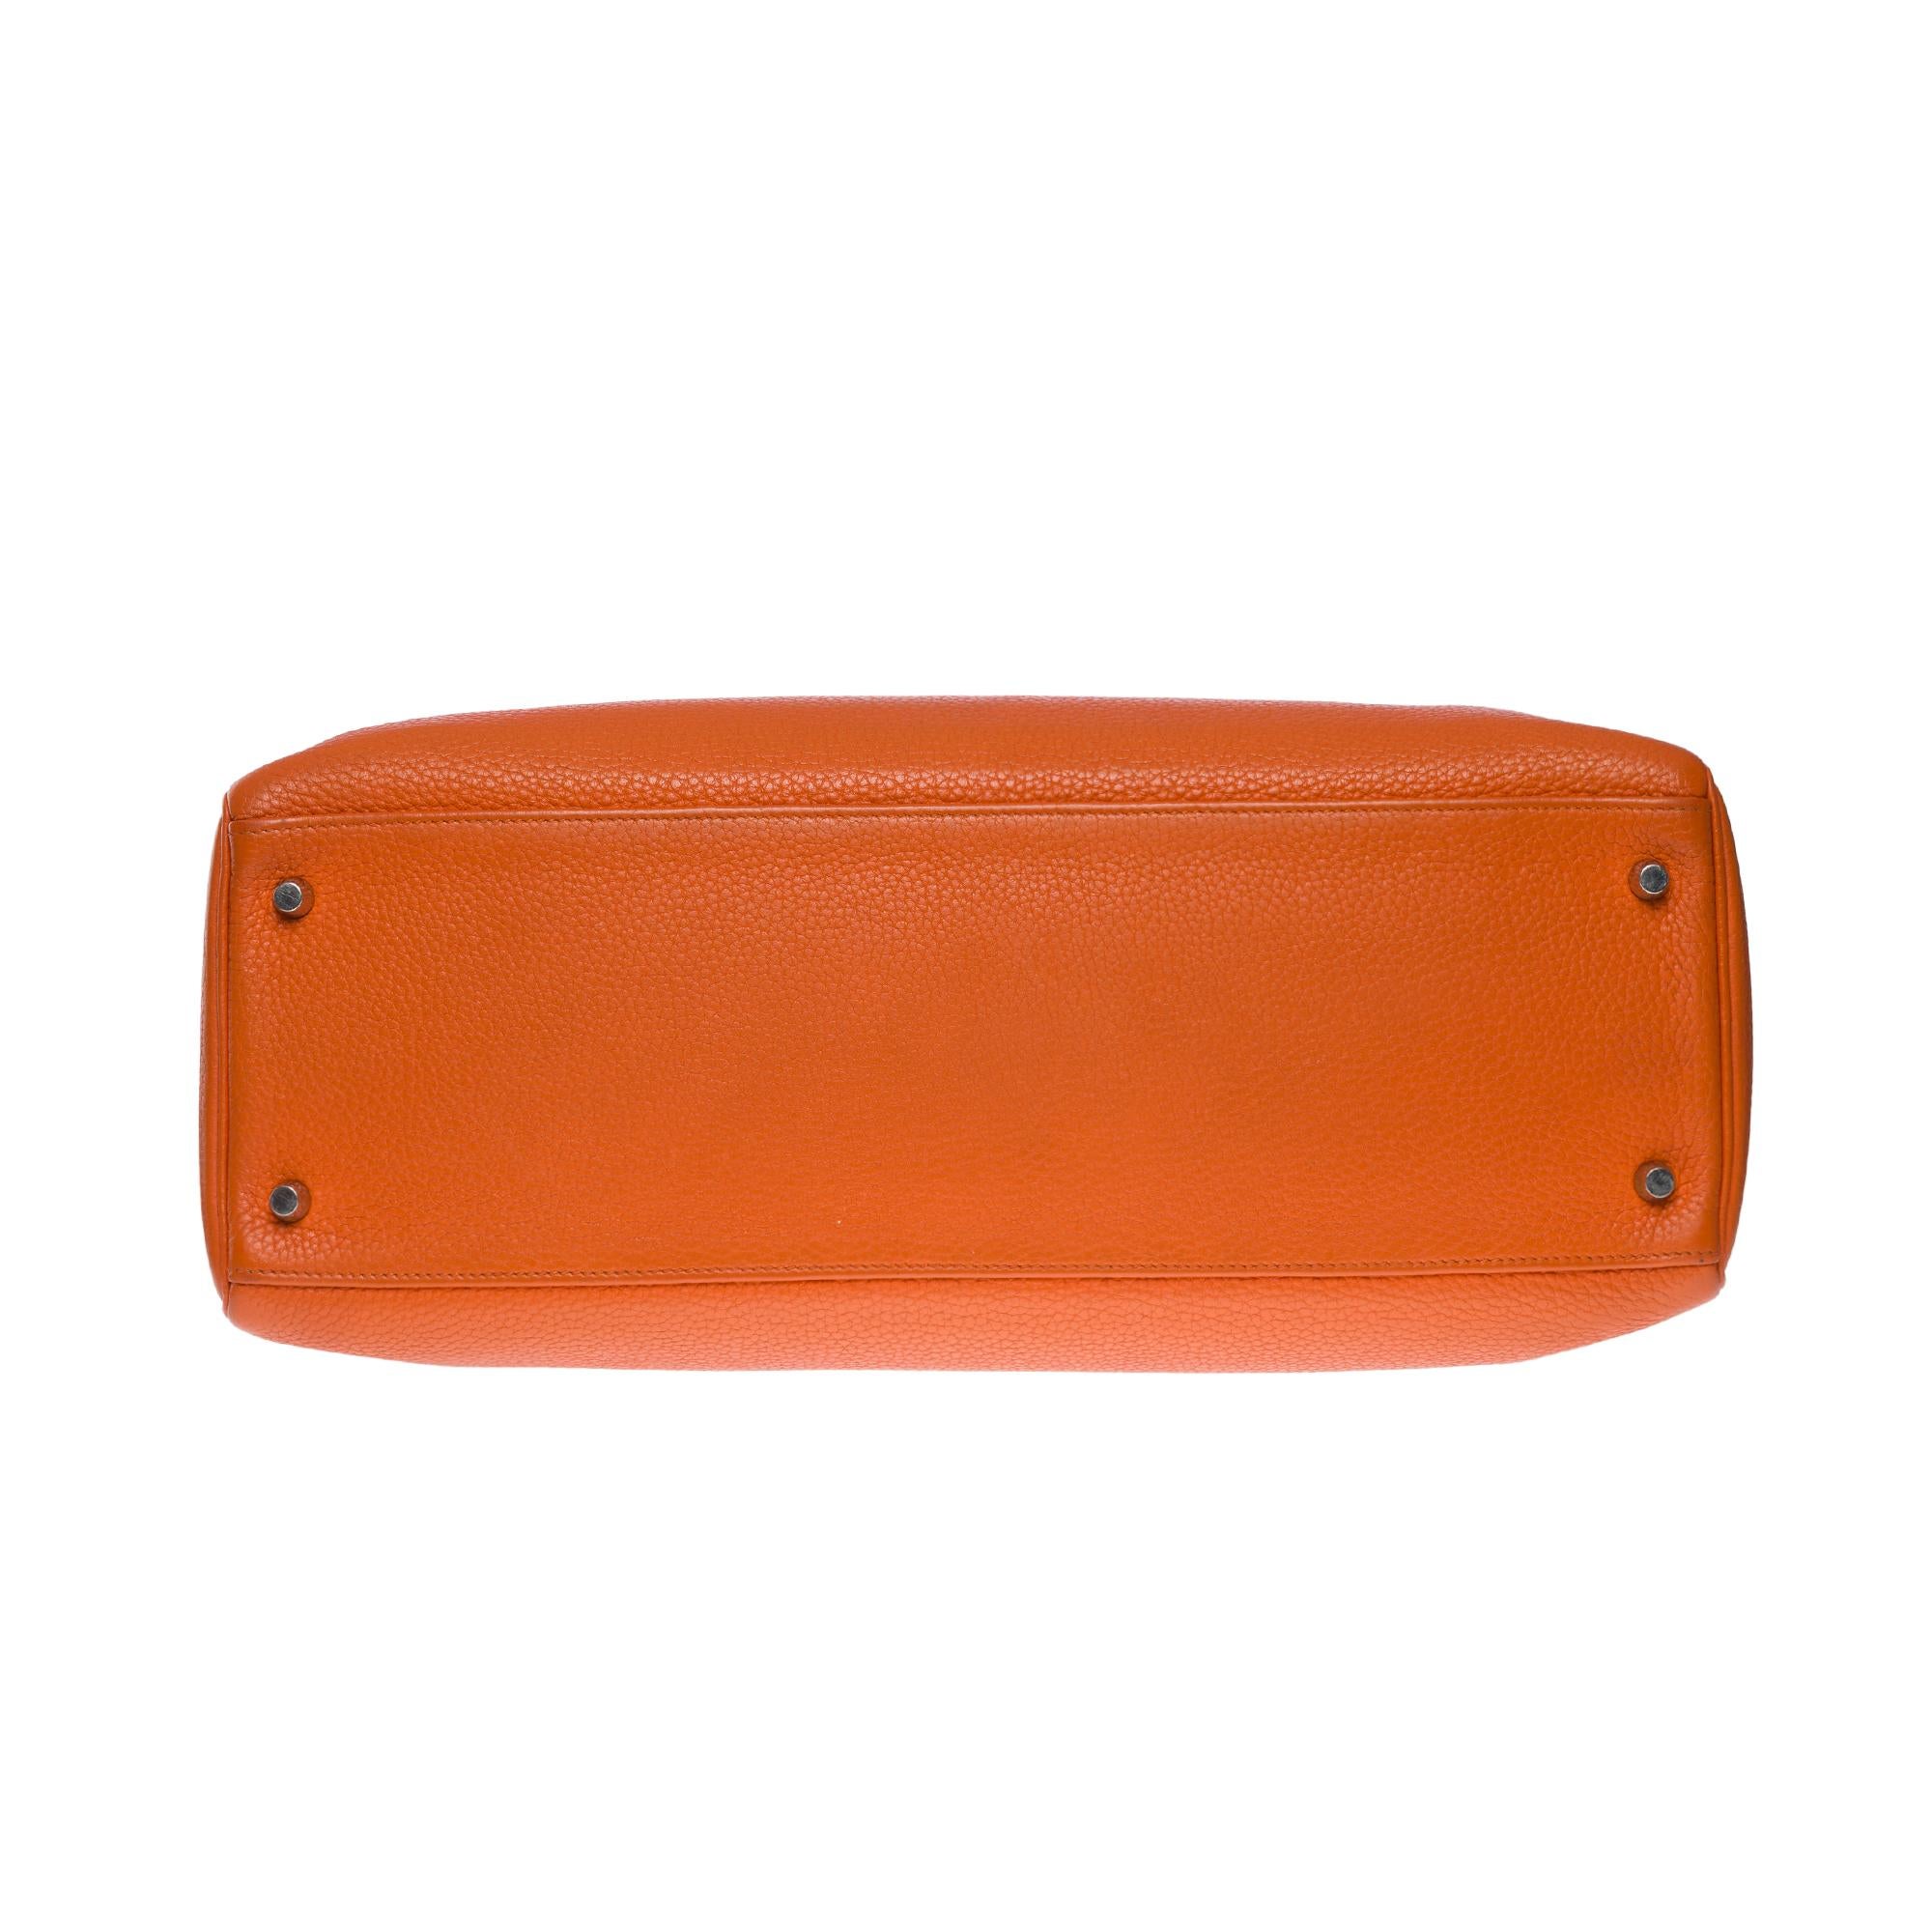 Hermes Kelly 40 retourne handbag strap in Orange Togo leather, SHW 7